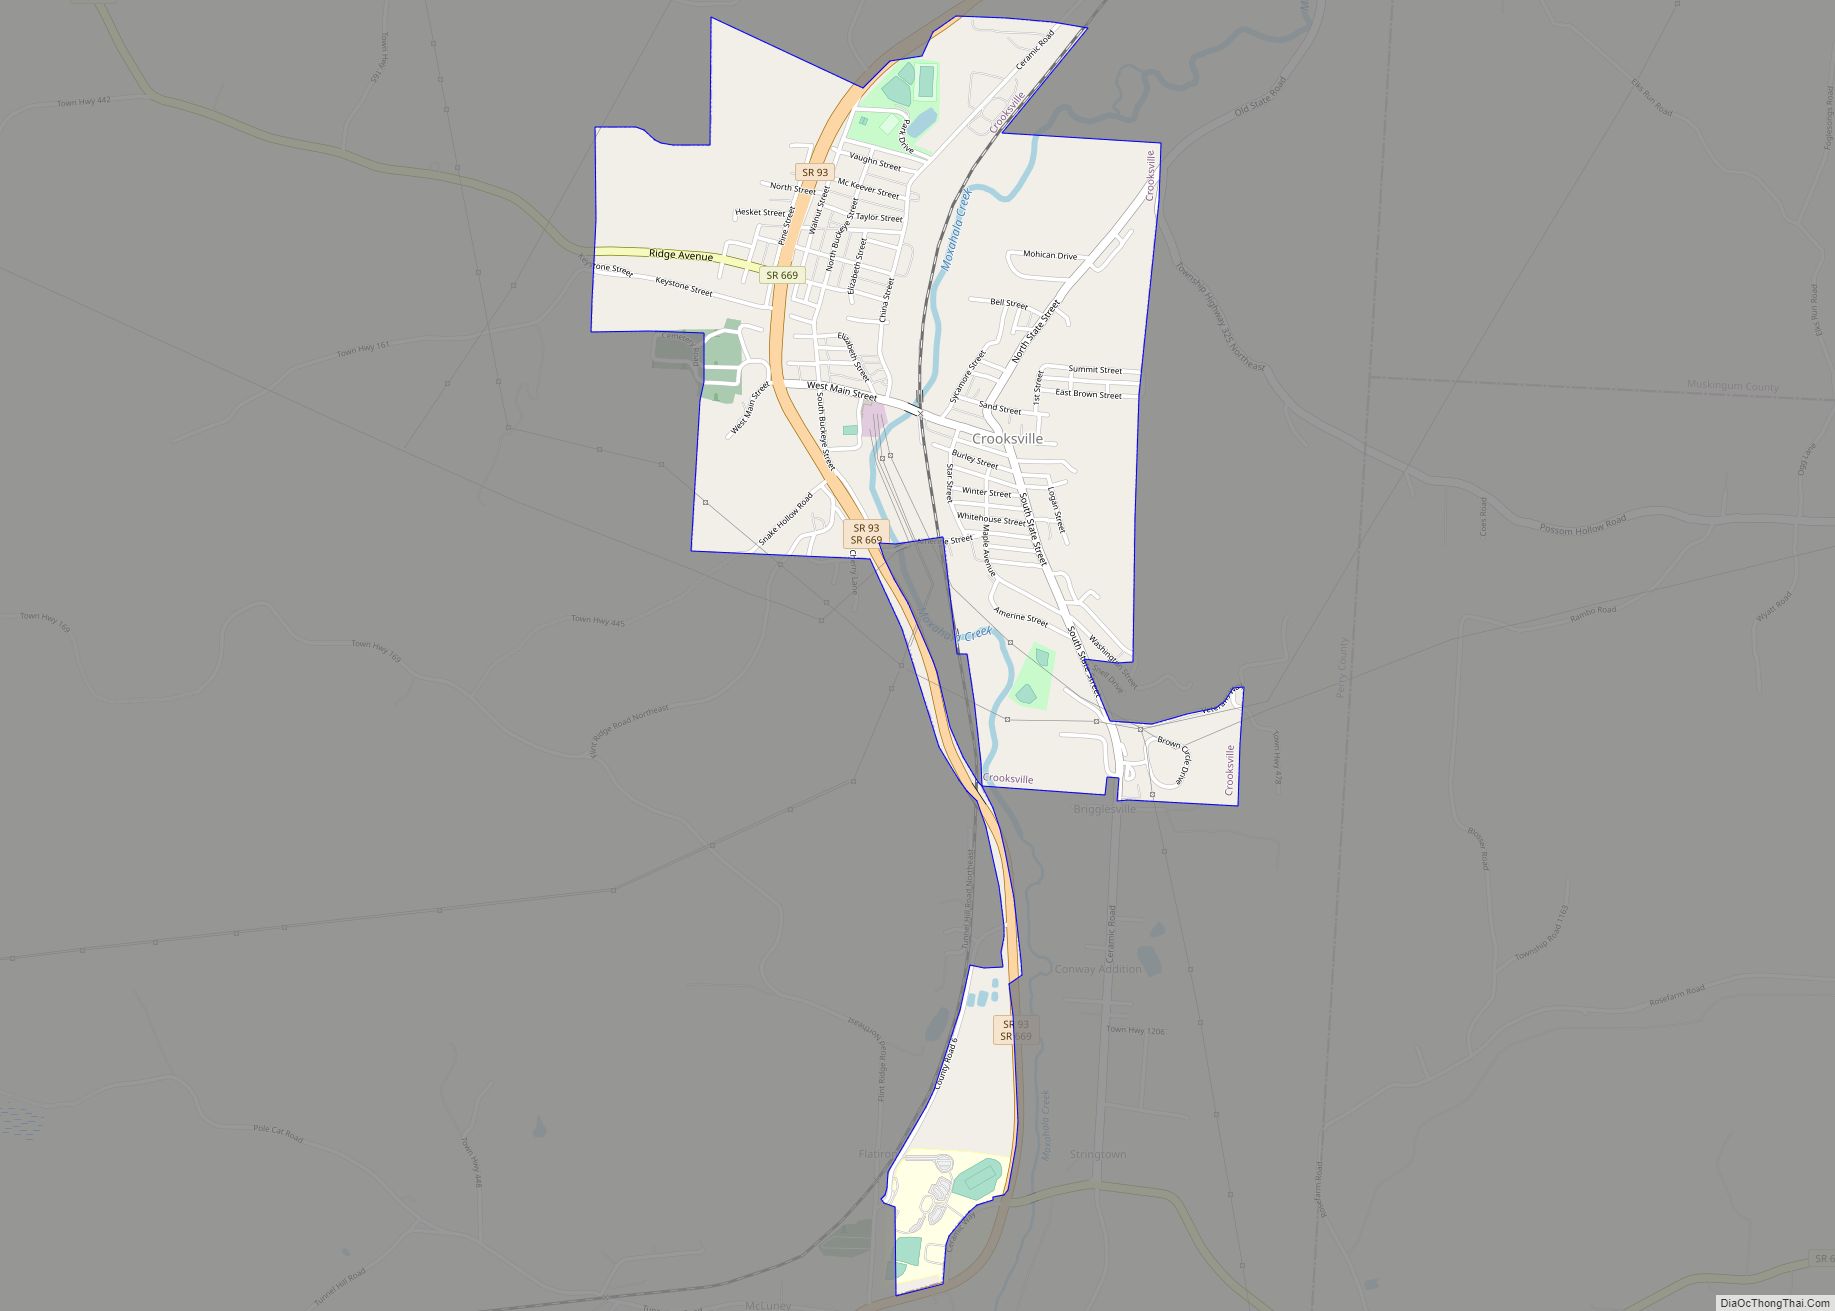 Map of Crooksville village